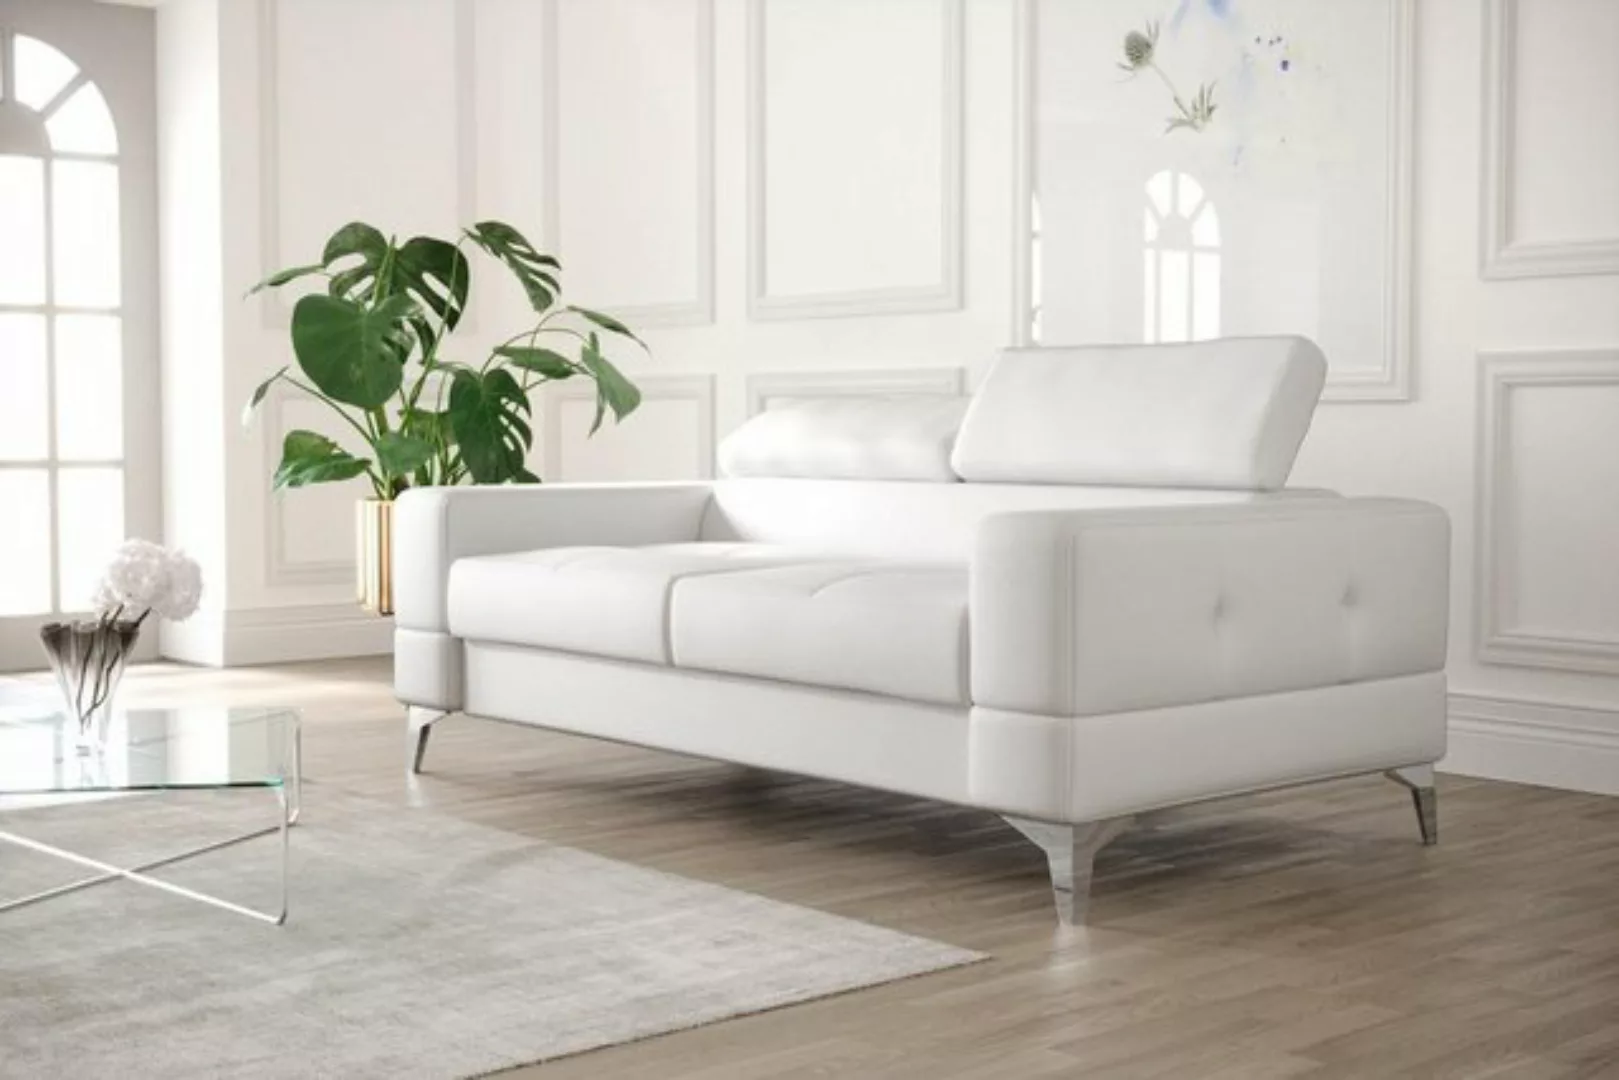 JVmoebel Sofa Schwarzer Zweisitzer Luxus Couch Moderne Wohnzimmer Sitzmöbel günstig online kaufen